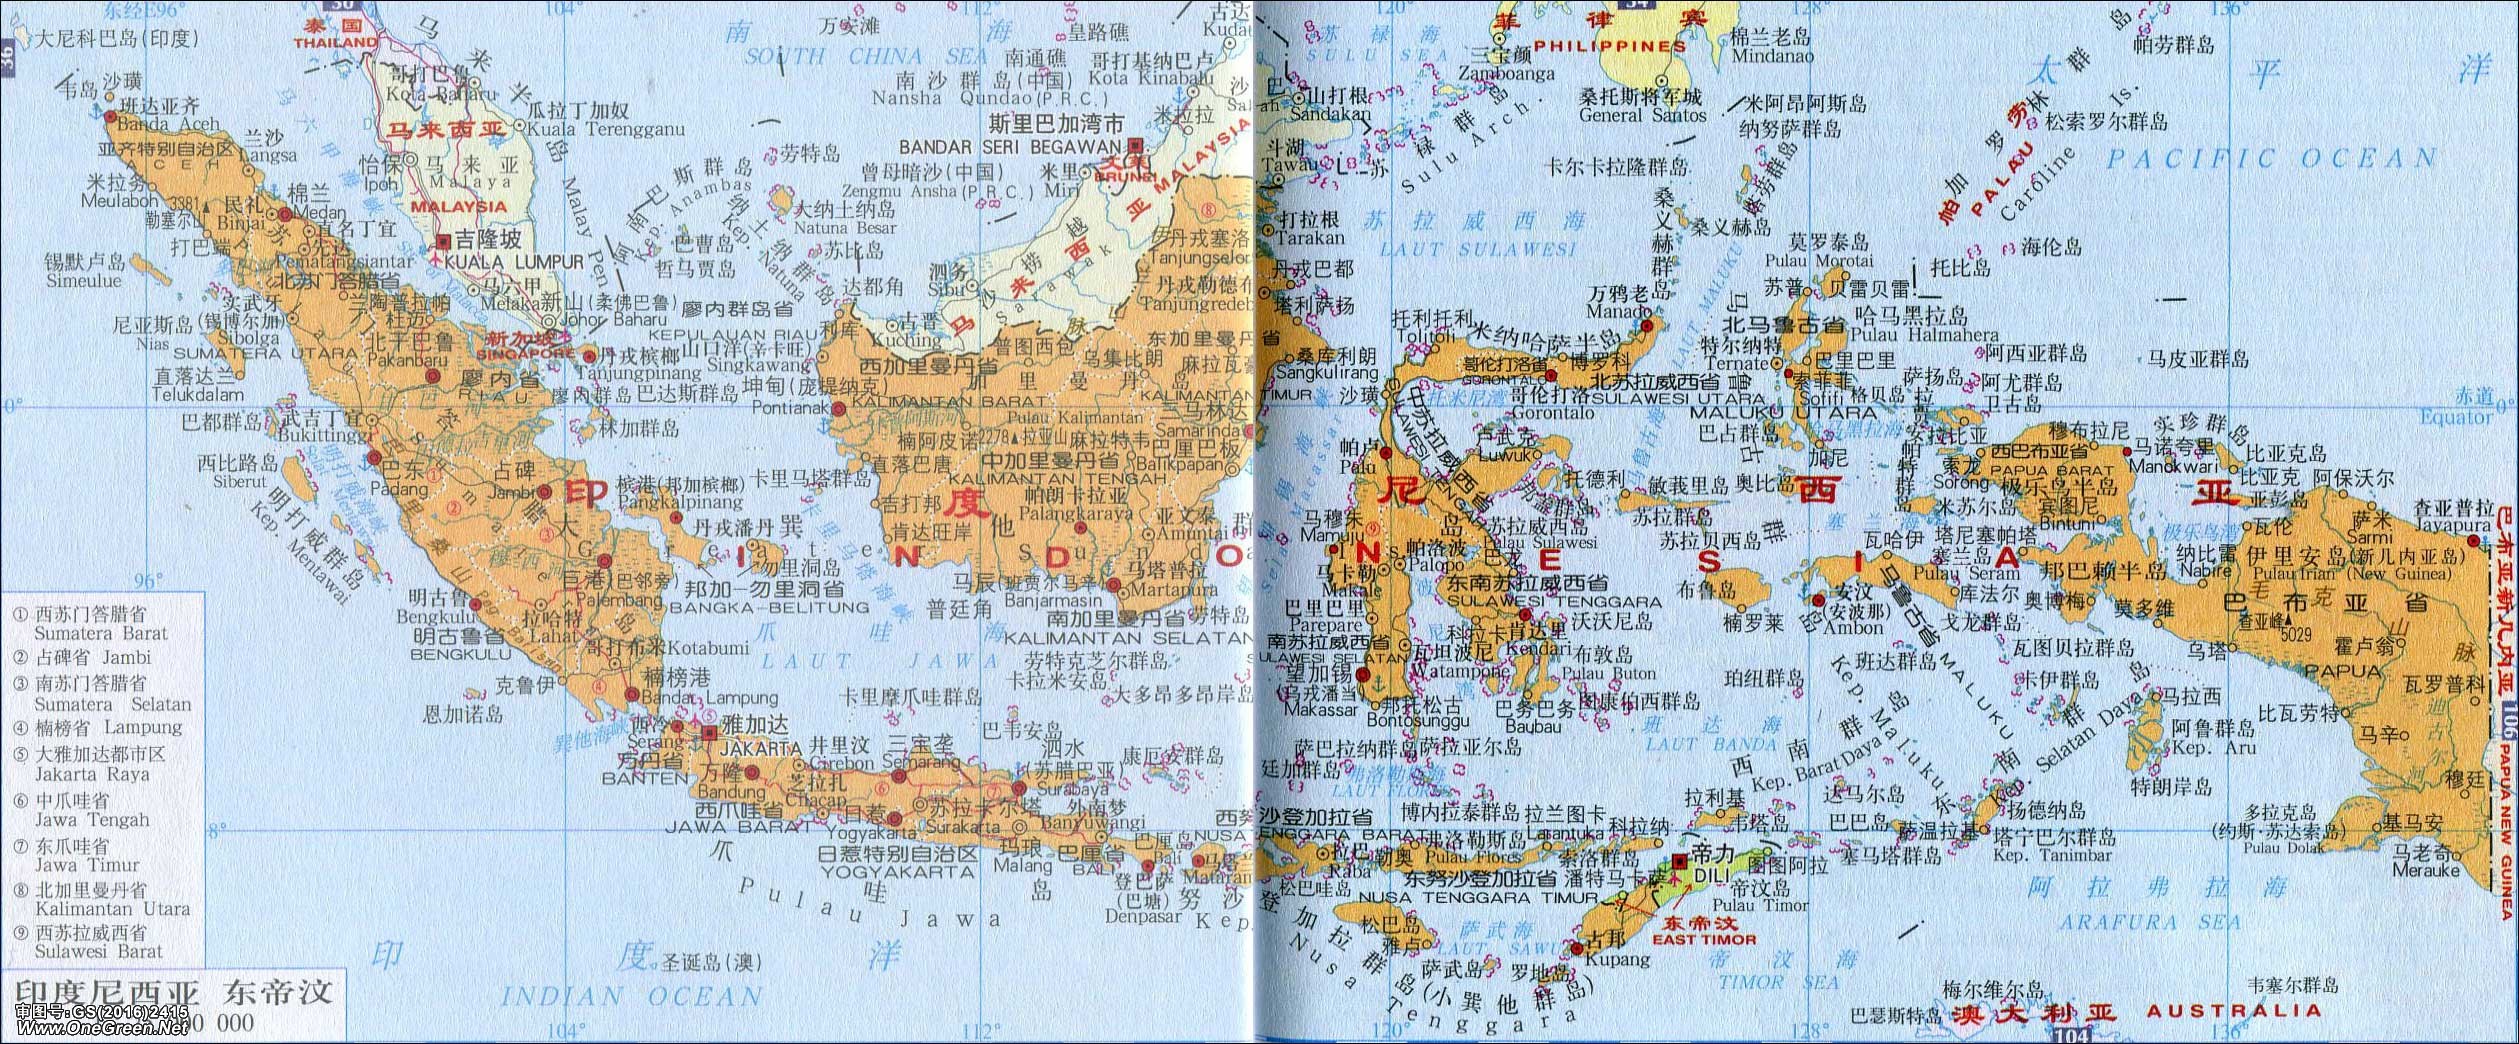 印度尼西亚地图最新版